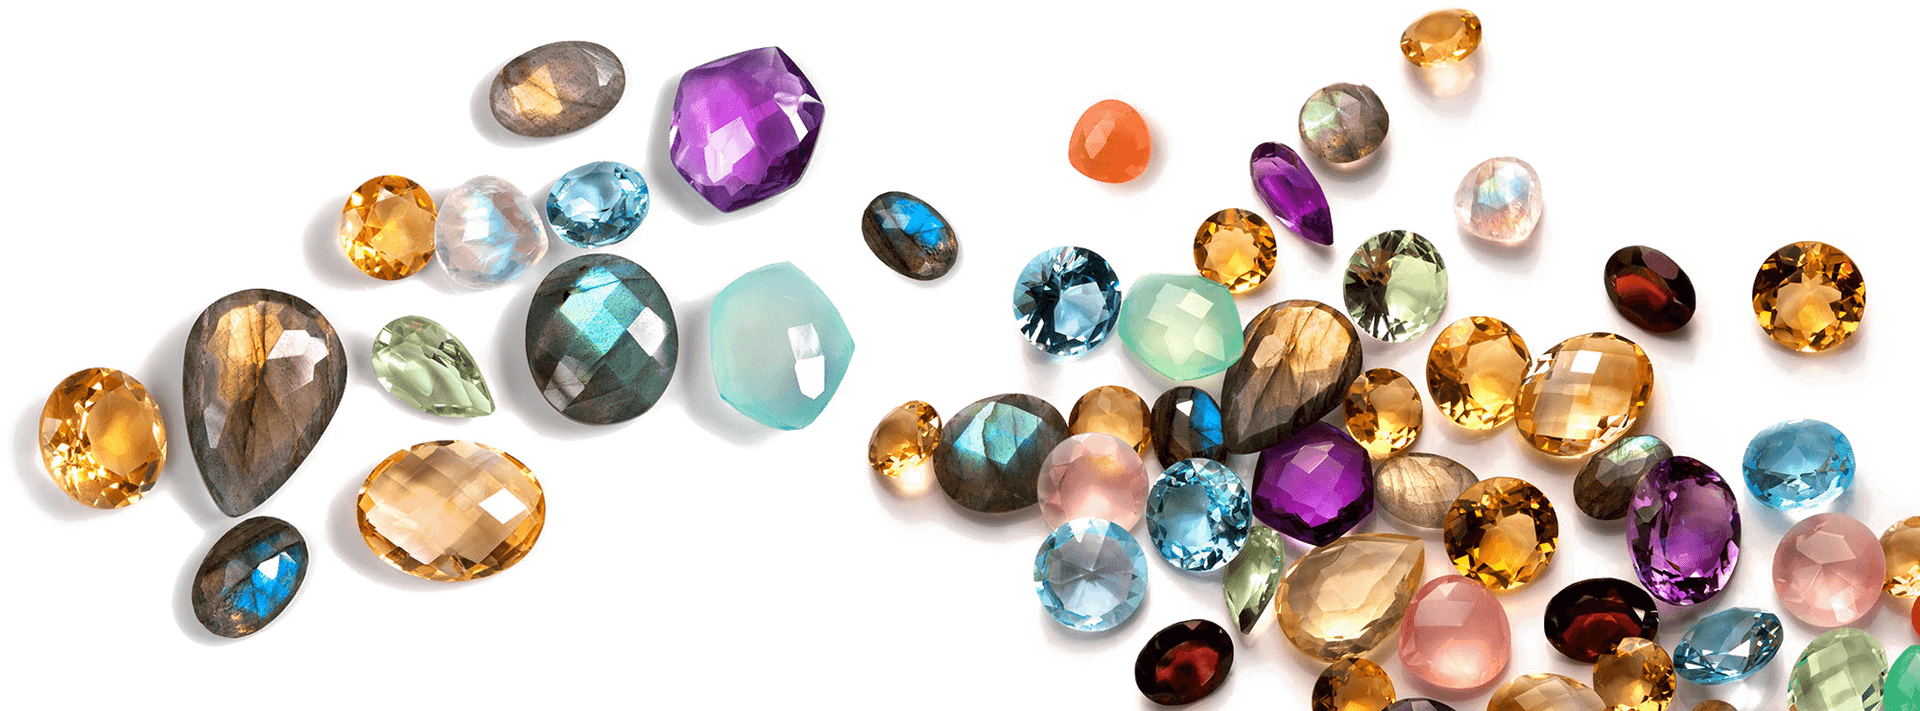 Download Assorted Precious Gemstones | Wallpapers.com